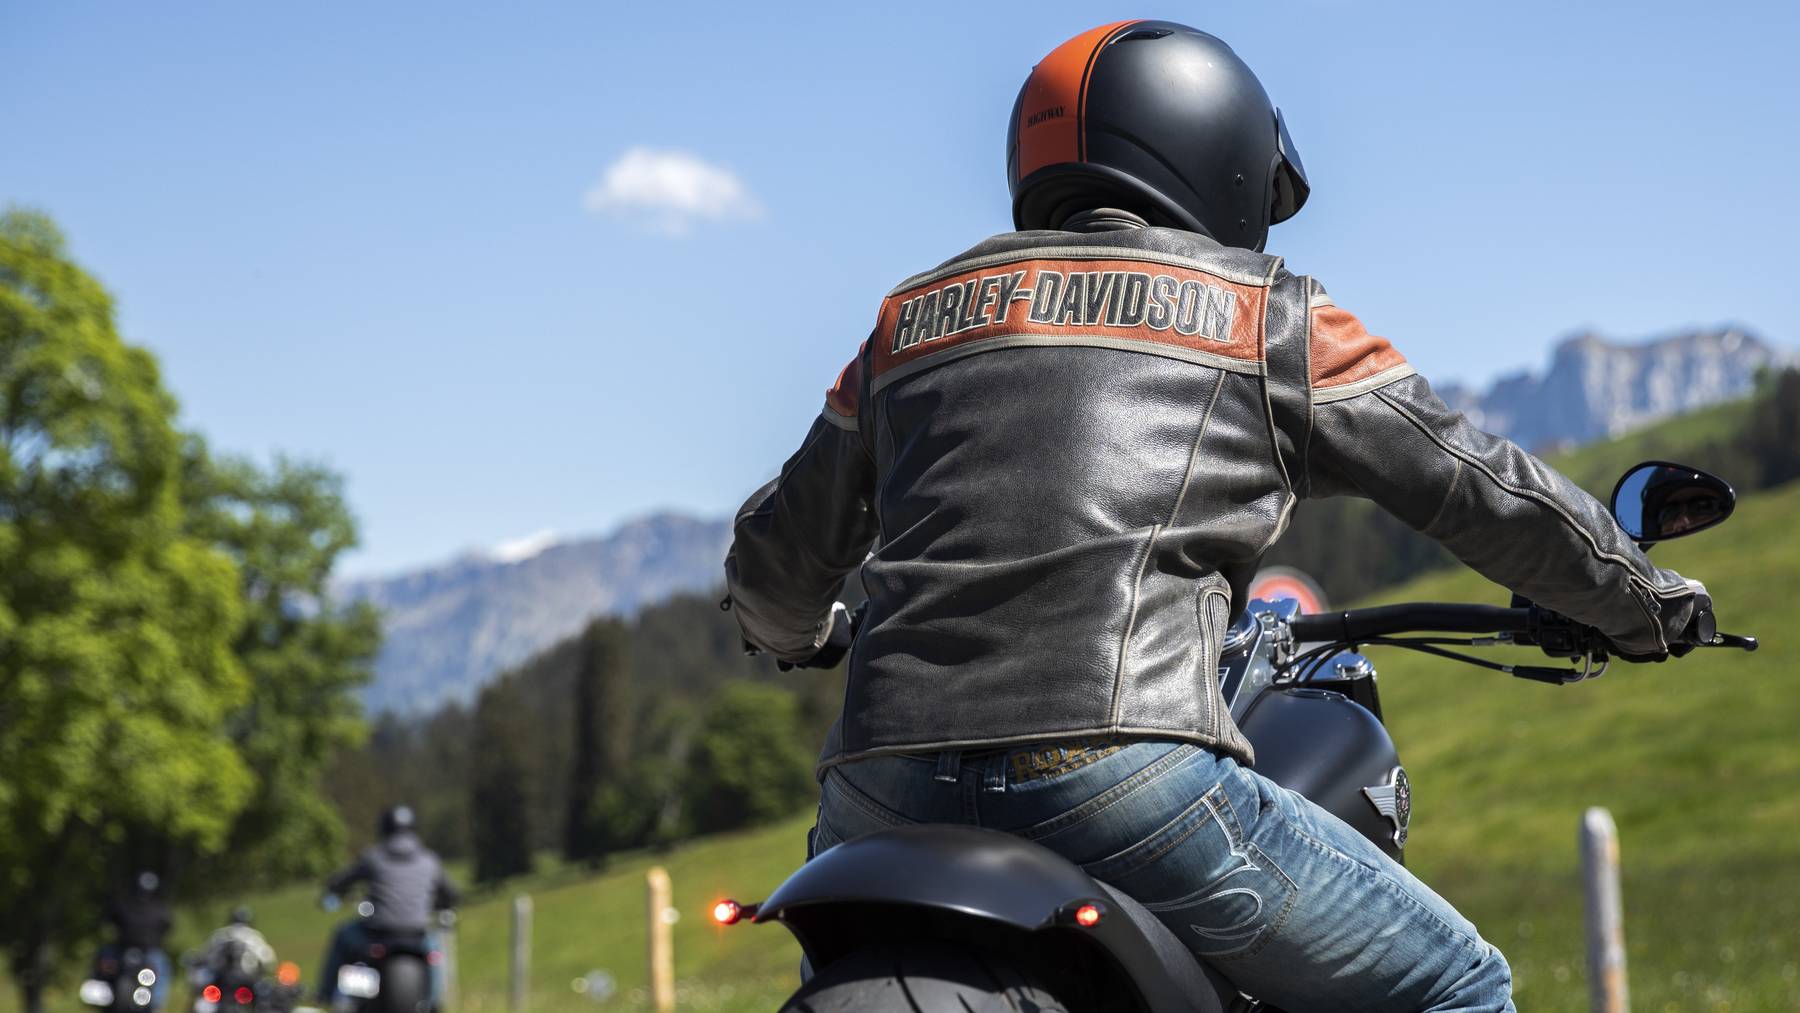 Lederbekleidung ist für Motorradfahrer empfehlenswert, Flip-Flops hingegen ein No-Go.